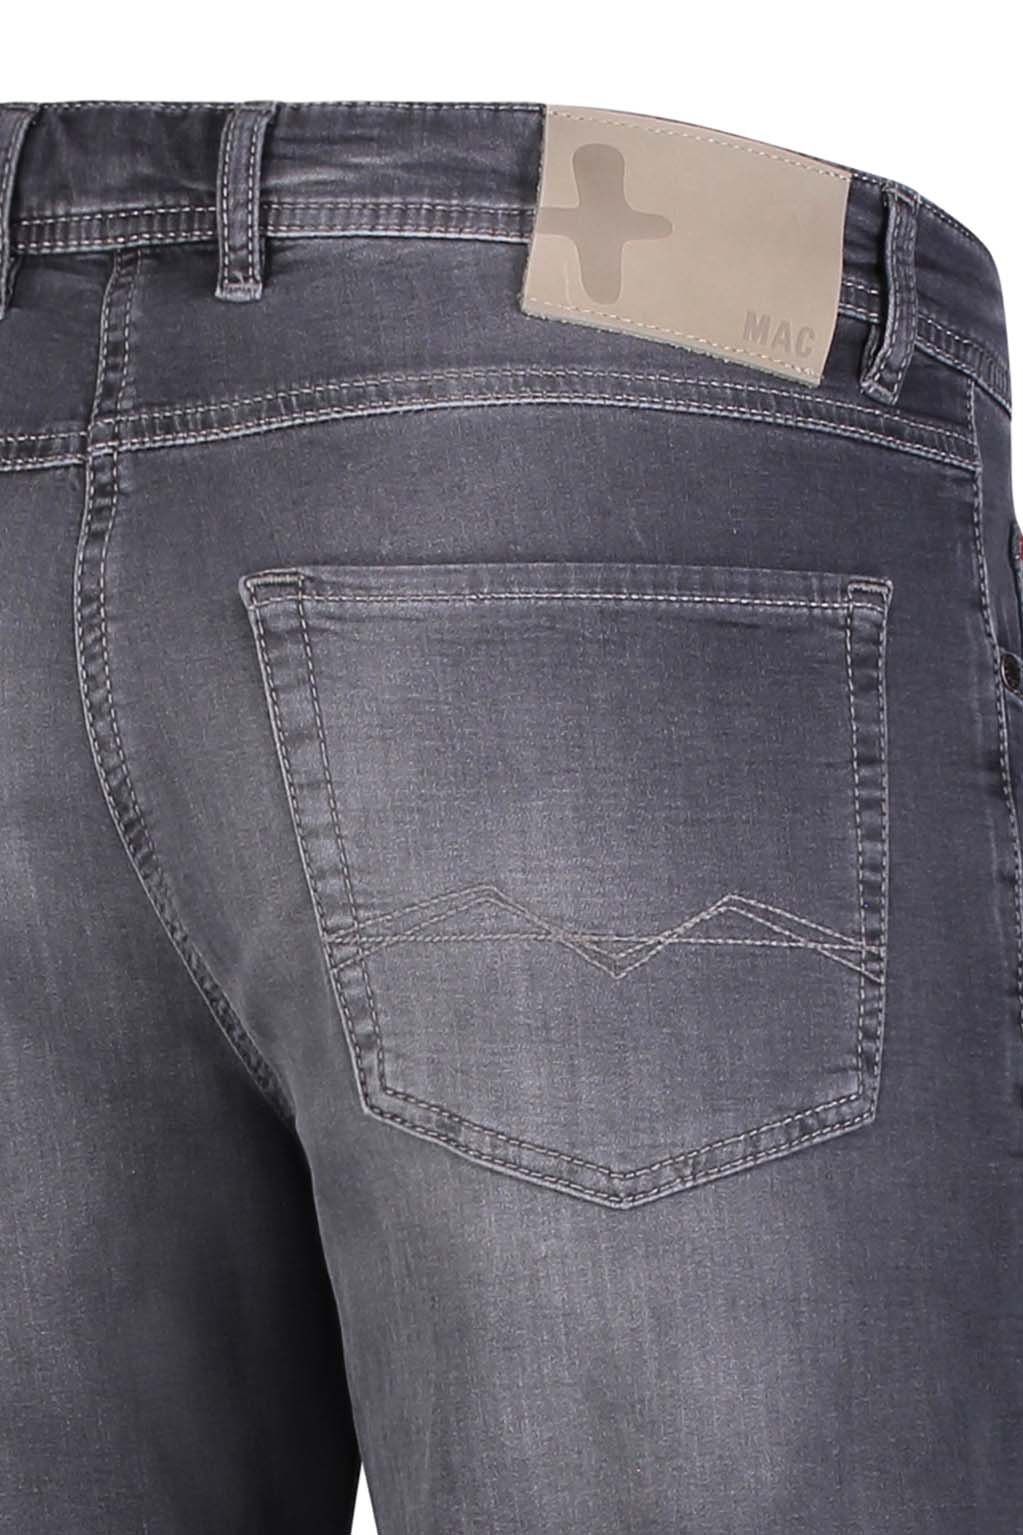 JOG'N 0562-00-0994L-H872 Men BERMUDA ashgrey 5-Pocket-Jeans MAC MAC MAC used Trousers